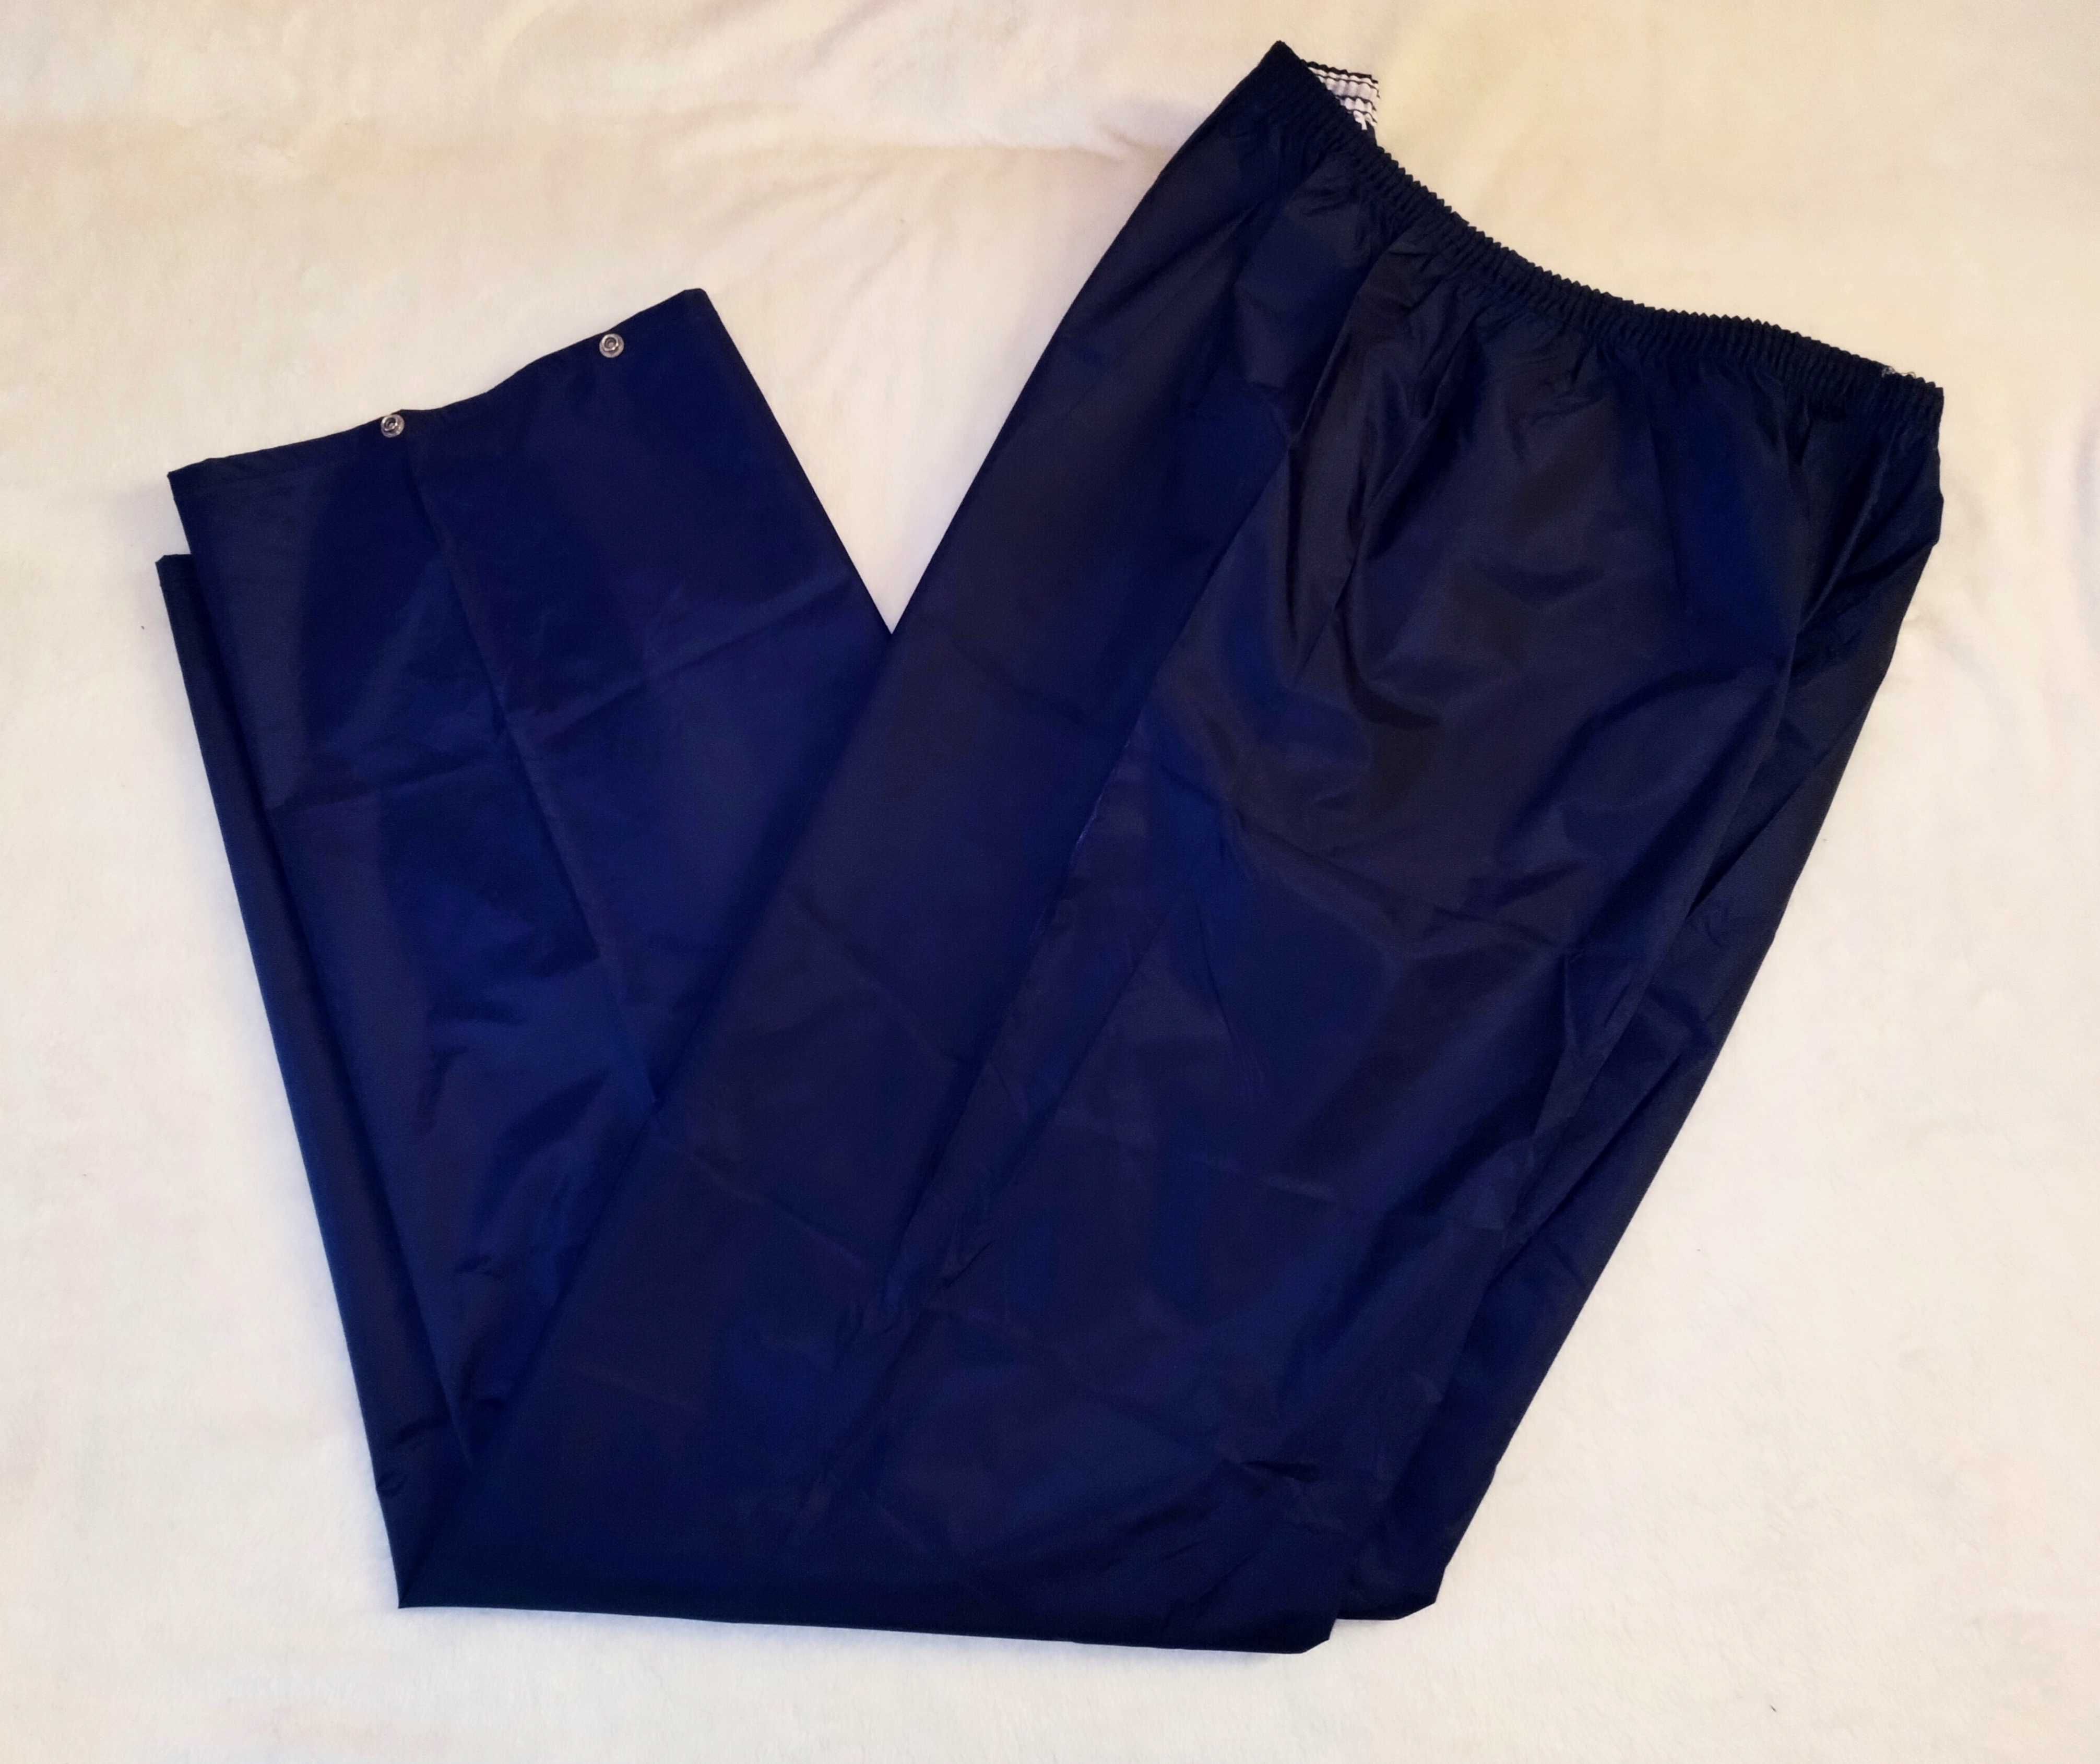 Spodnie przeciwdeszczowe męskie nieprzemakalne Klejone Szwy Nowe L